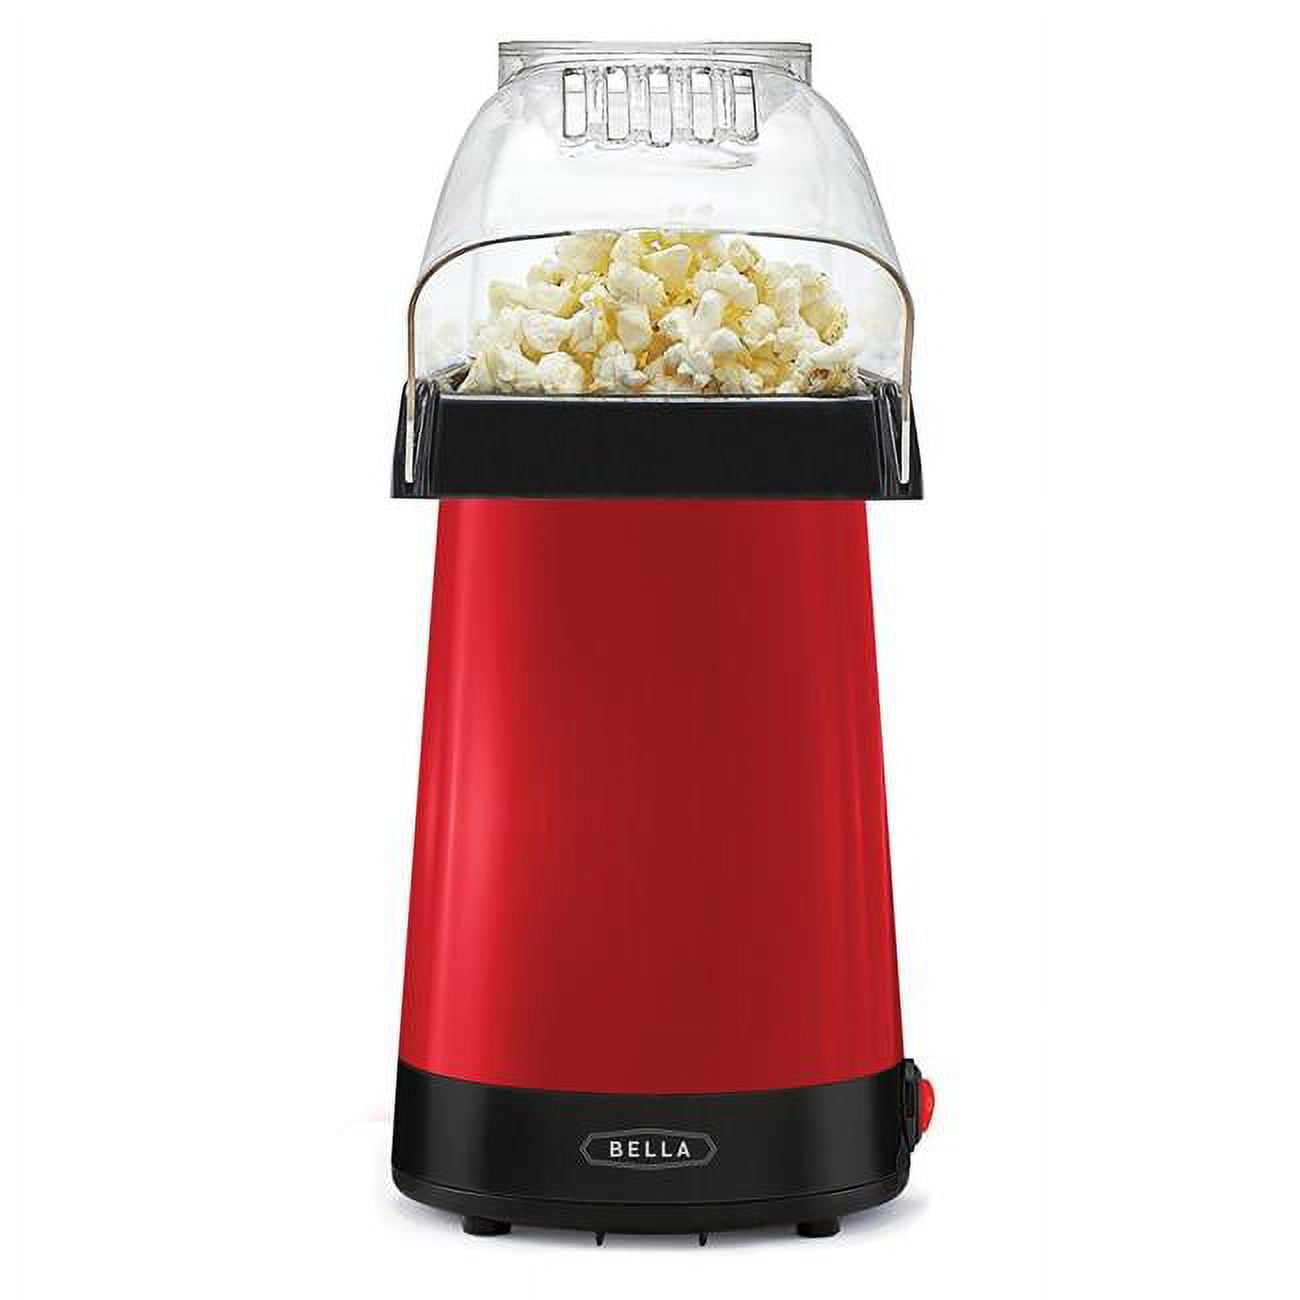 Bella BELPOPCR-RED Hot Air Popcorn Maker, Red 